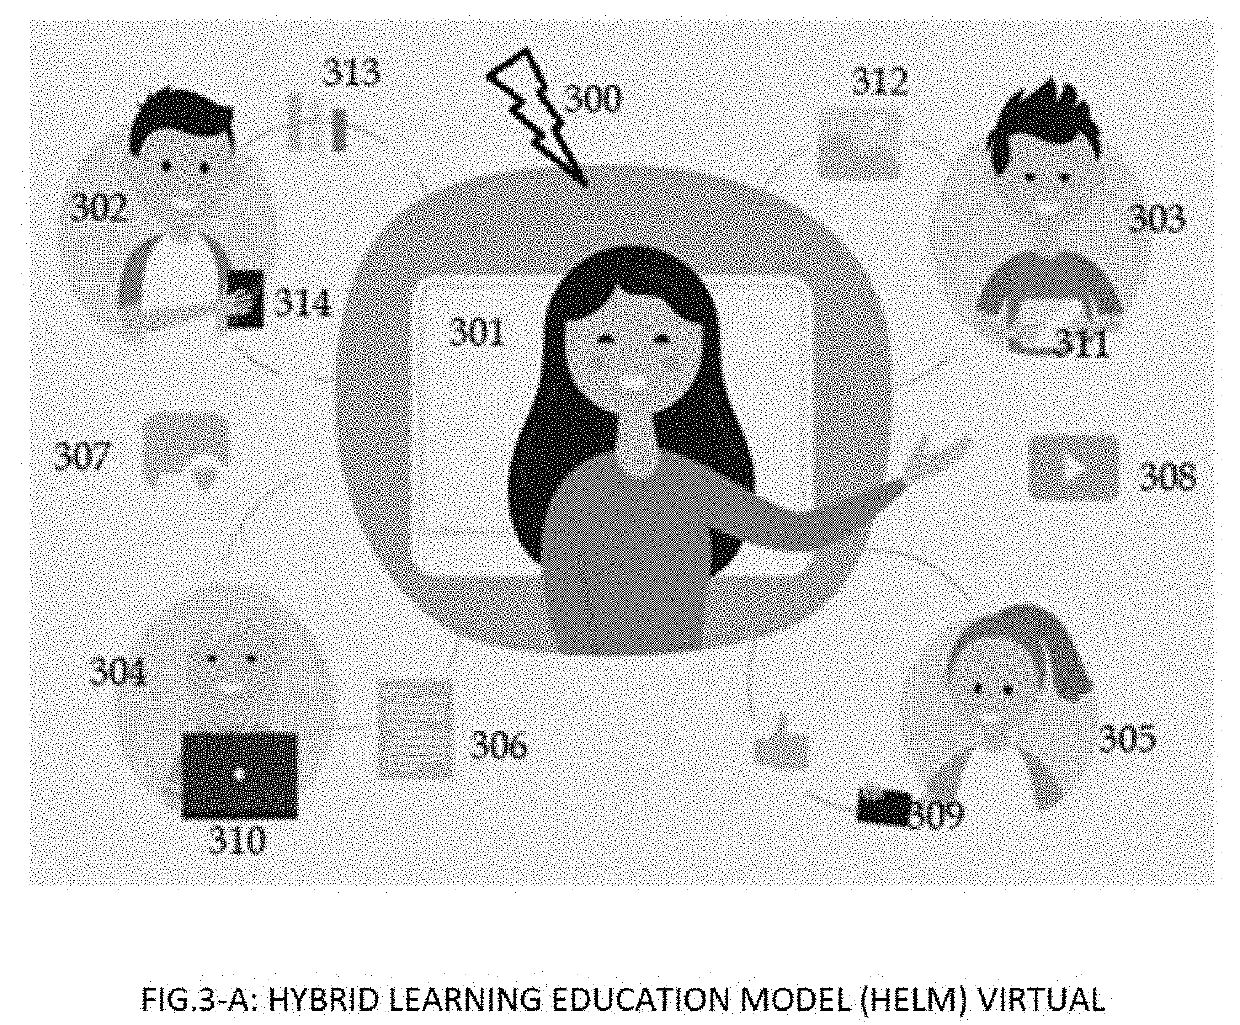 Hybrid learning education model (HLEM)